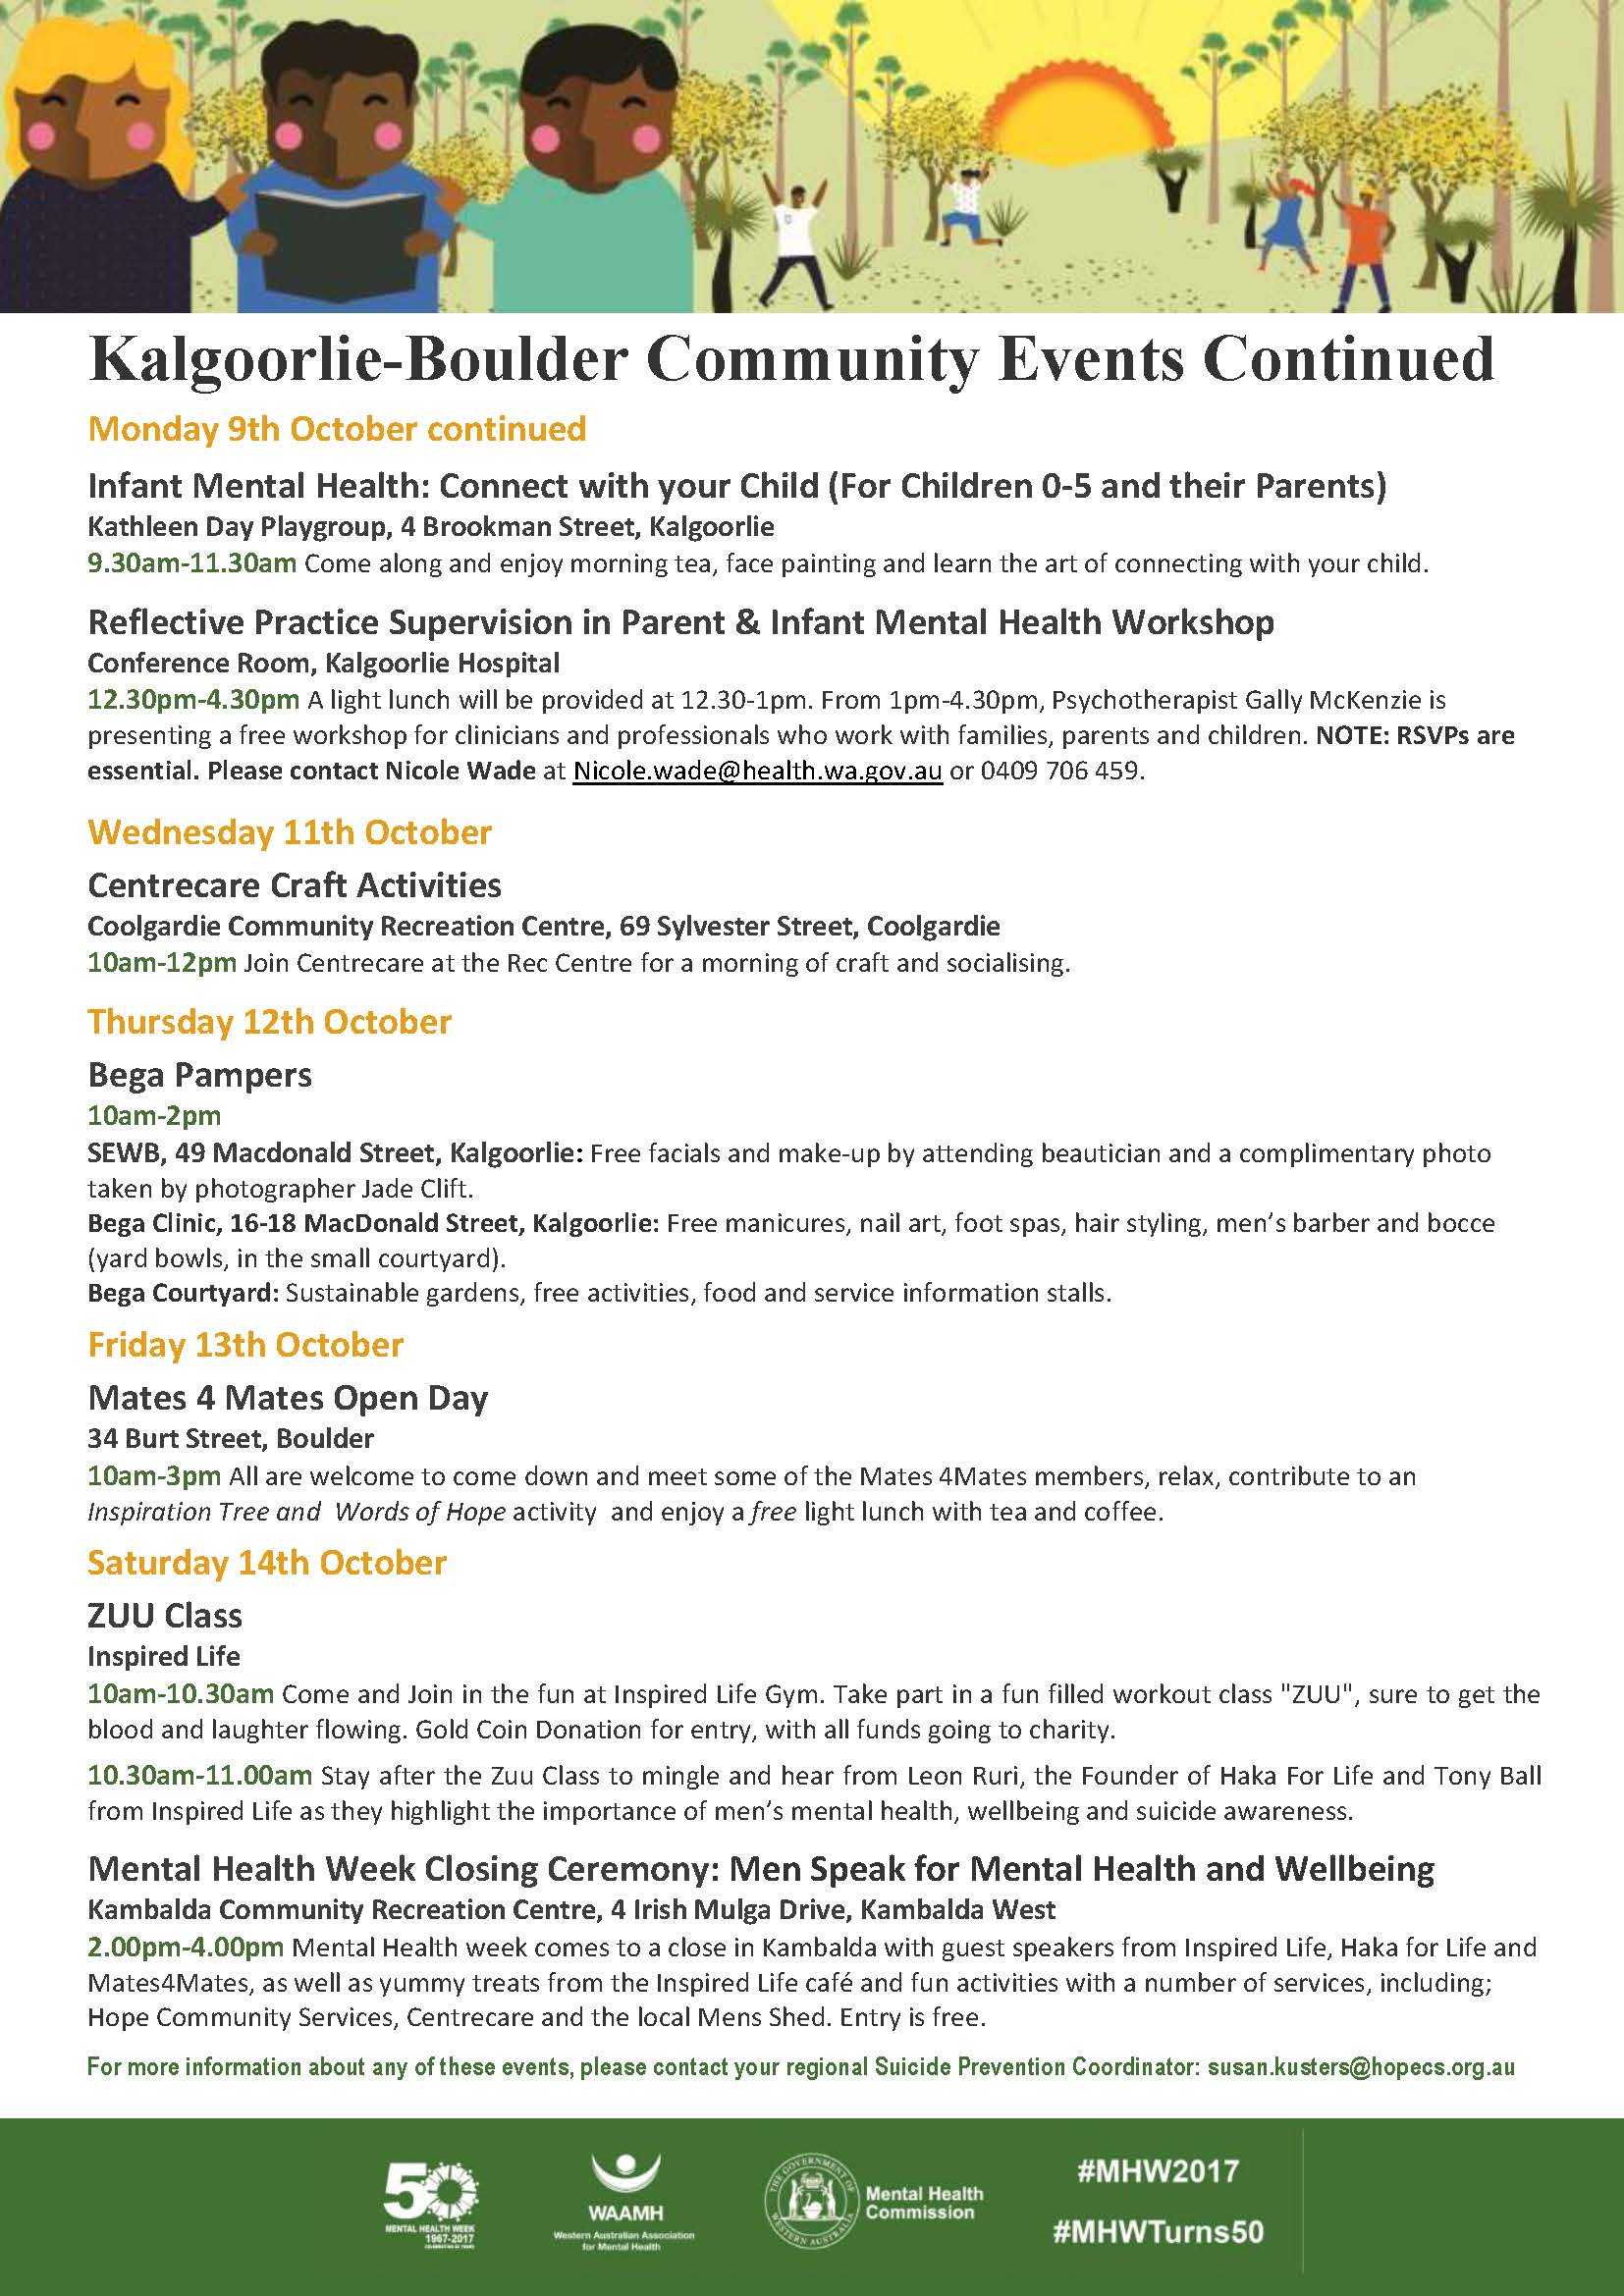 Mental Health Week 2017 Kalgoorlie